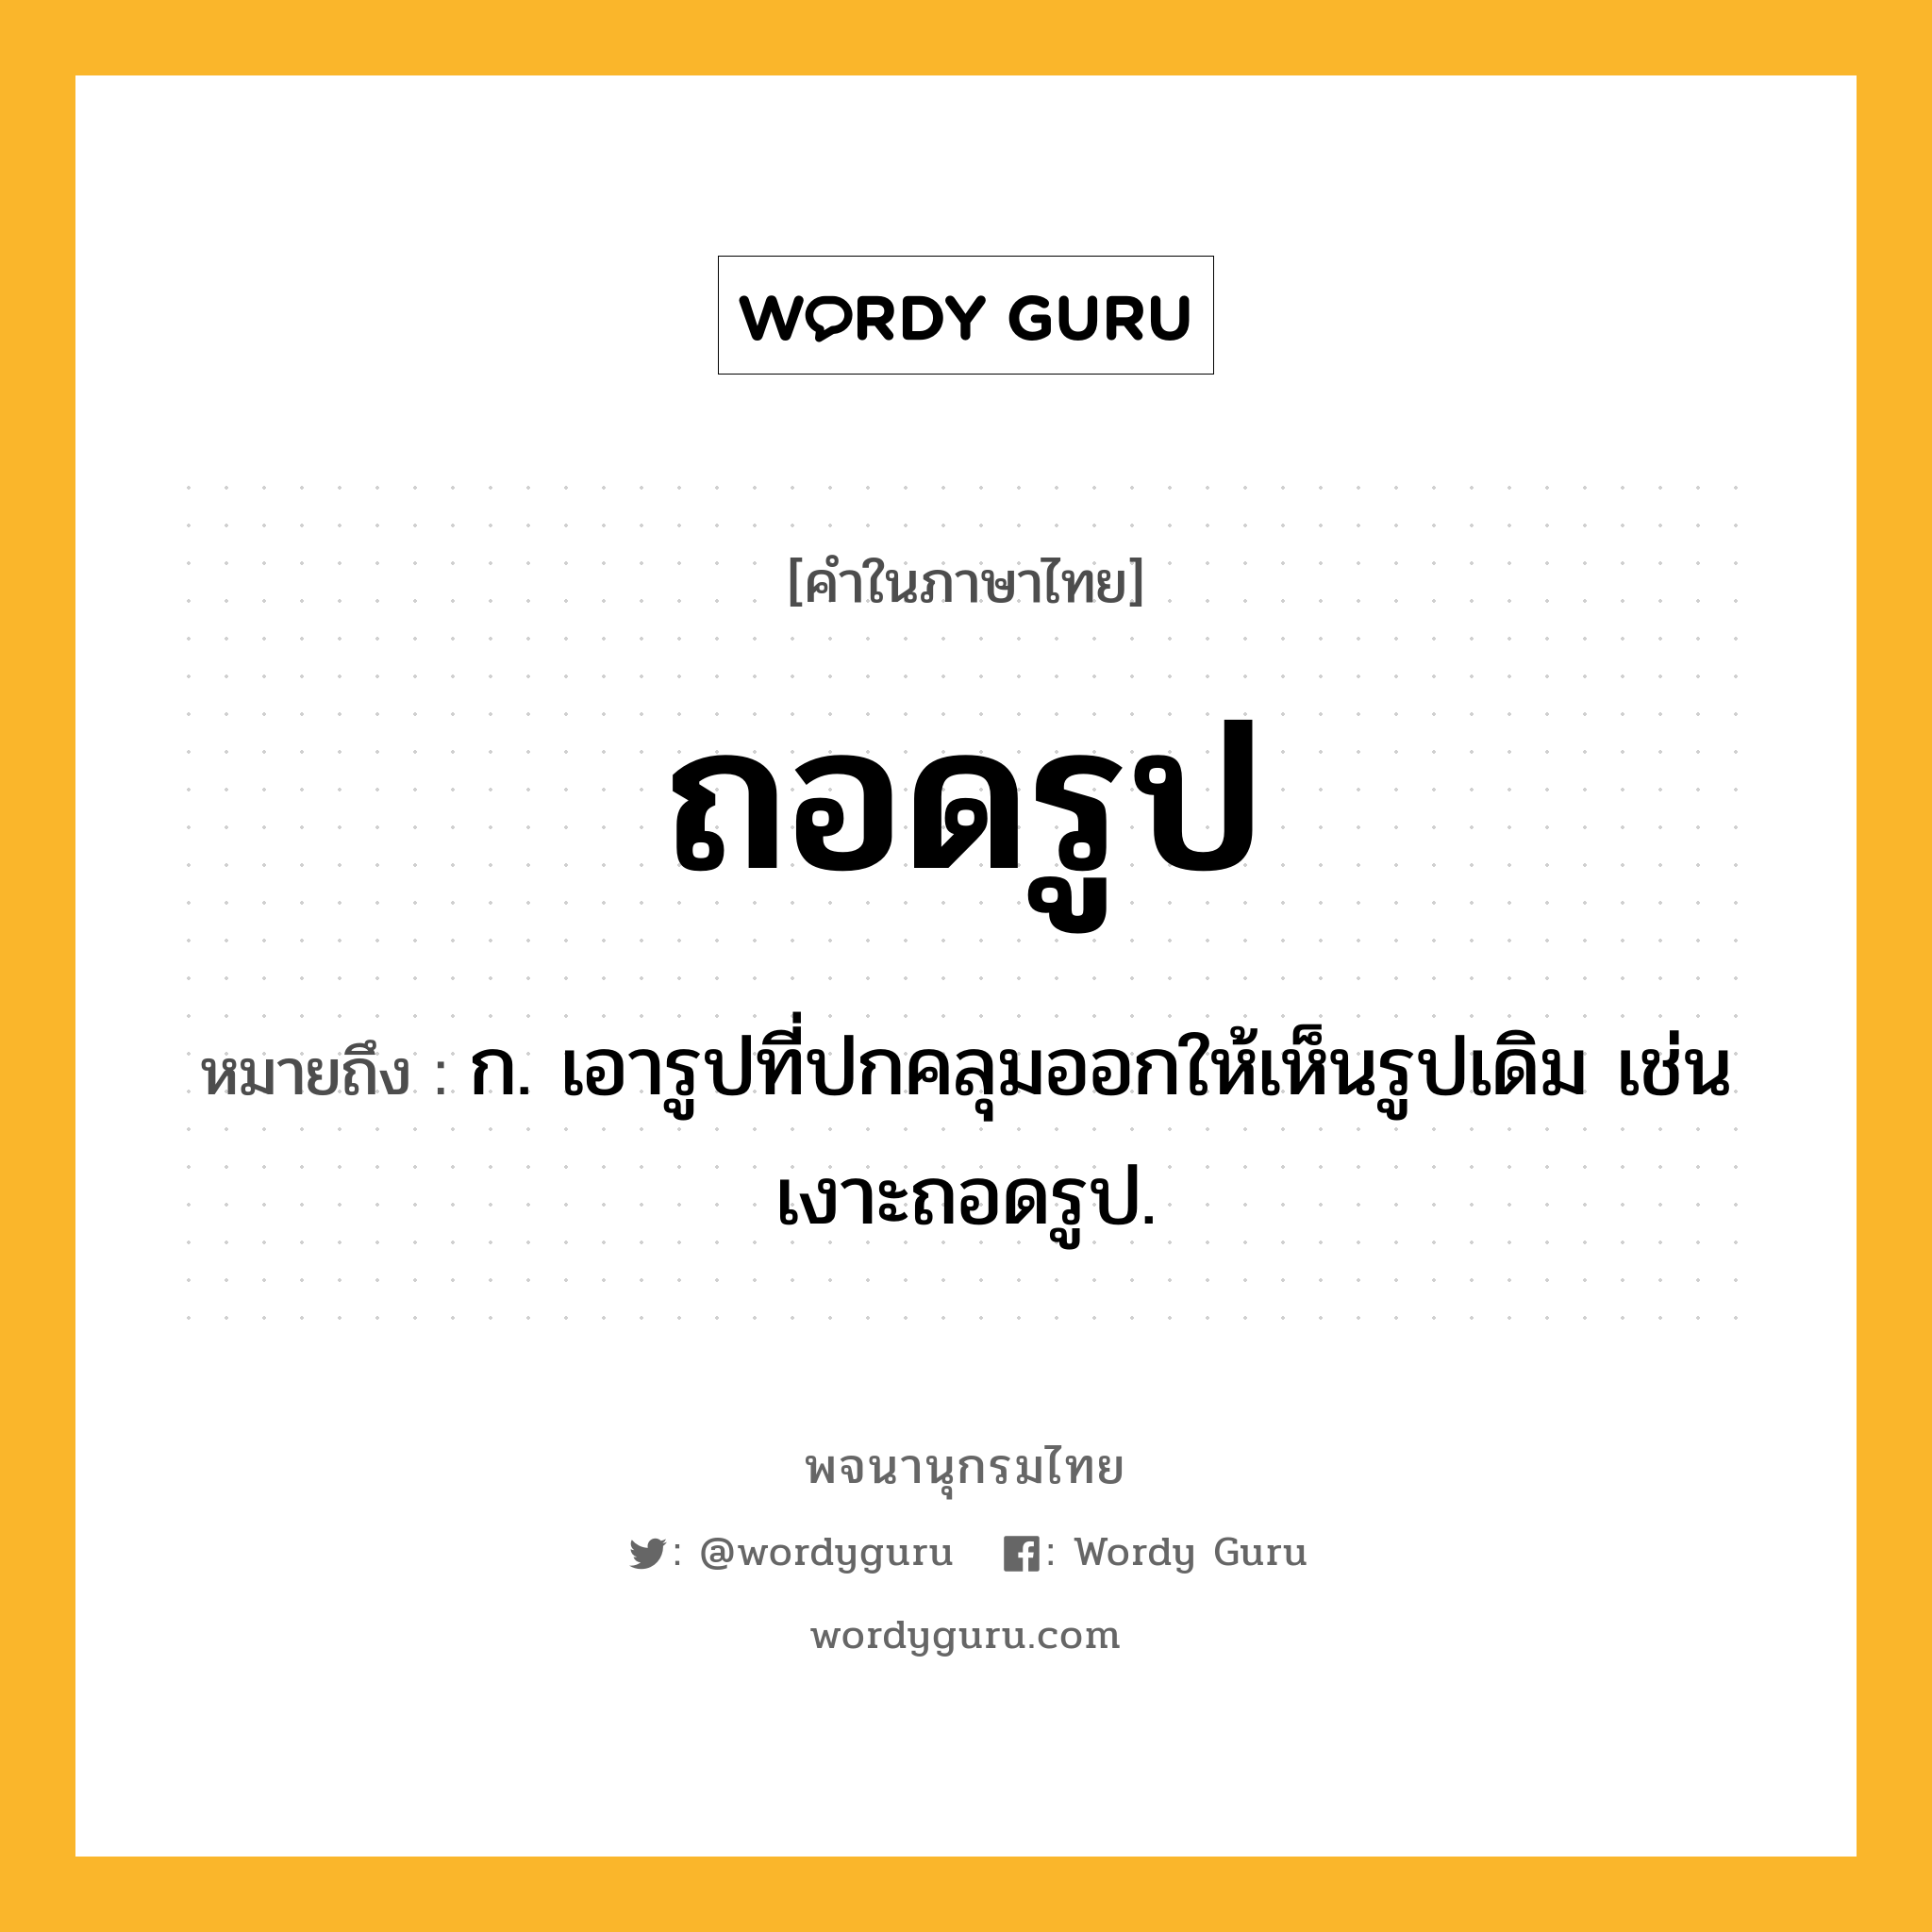 ถอดรูป ความหมาย หมายถึงอะไร?, คำในภาษาไทย ถอดรูป หมายถึง ก. เอารูปที่ปกคลุมออกให้เห็นรูปเดิม เช่น เงาะถอดรูป.